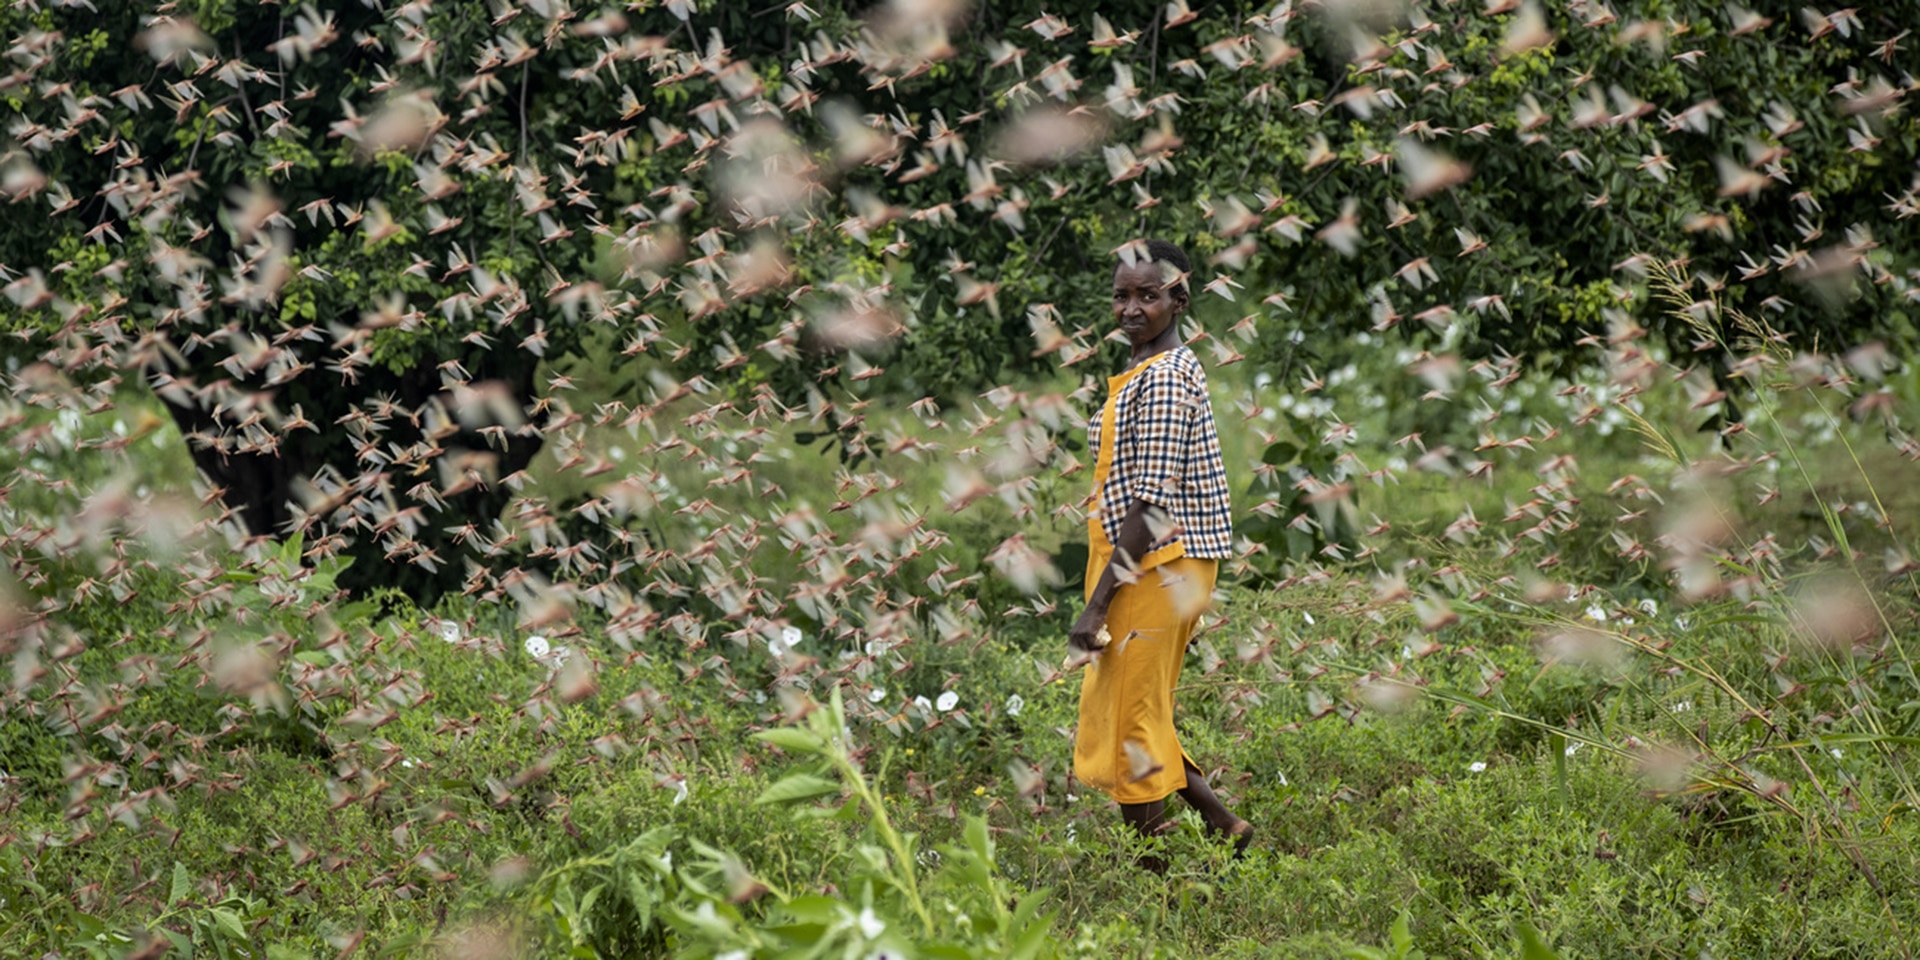 Une agricultrice marche à travers une nuée de criquets pèlerins se nourrissant de ses récoltes, dans le village de Katitika, au Kenya